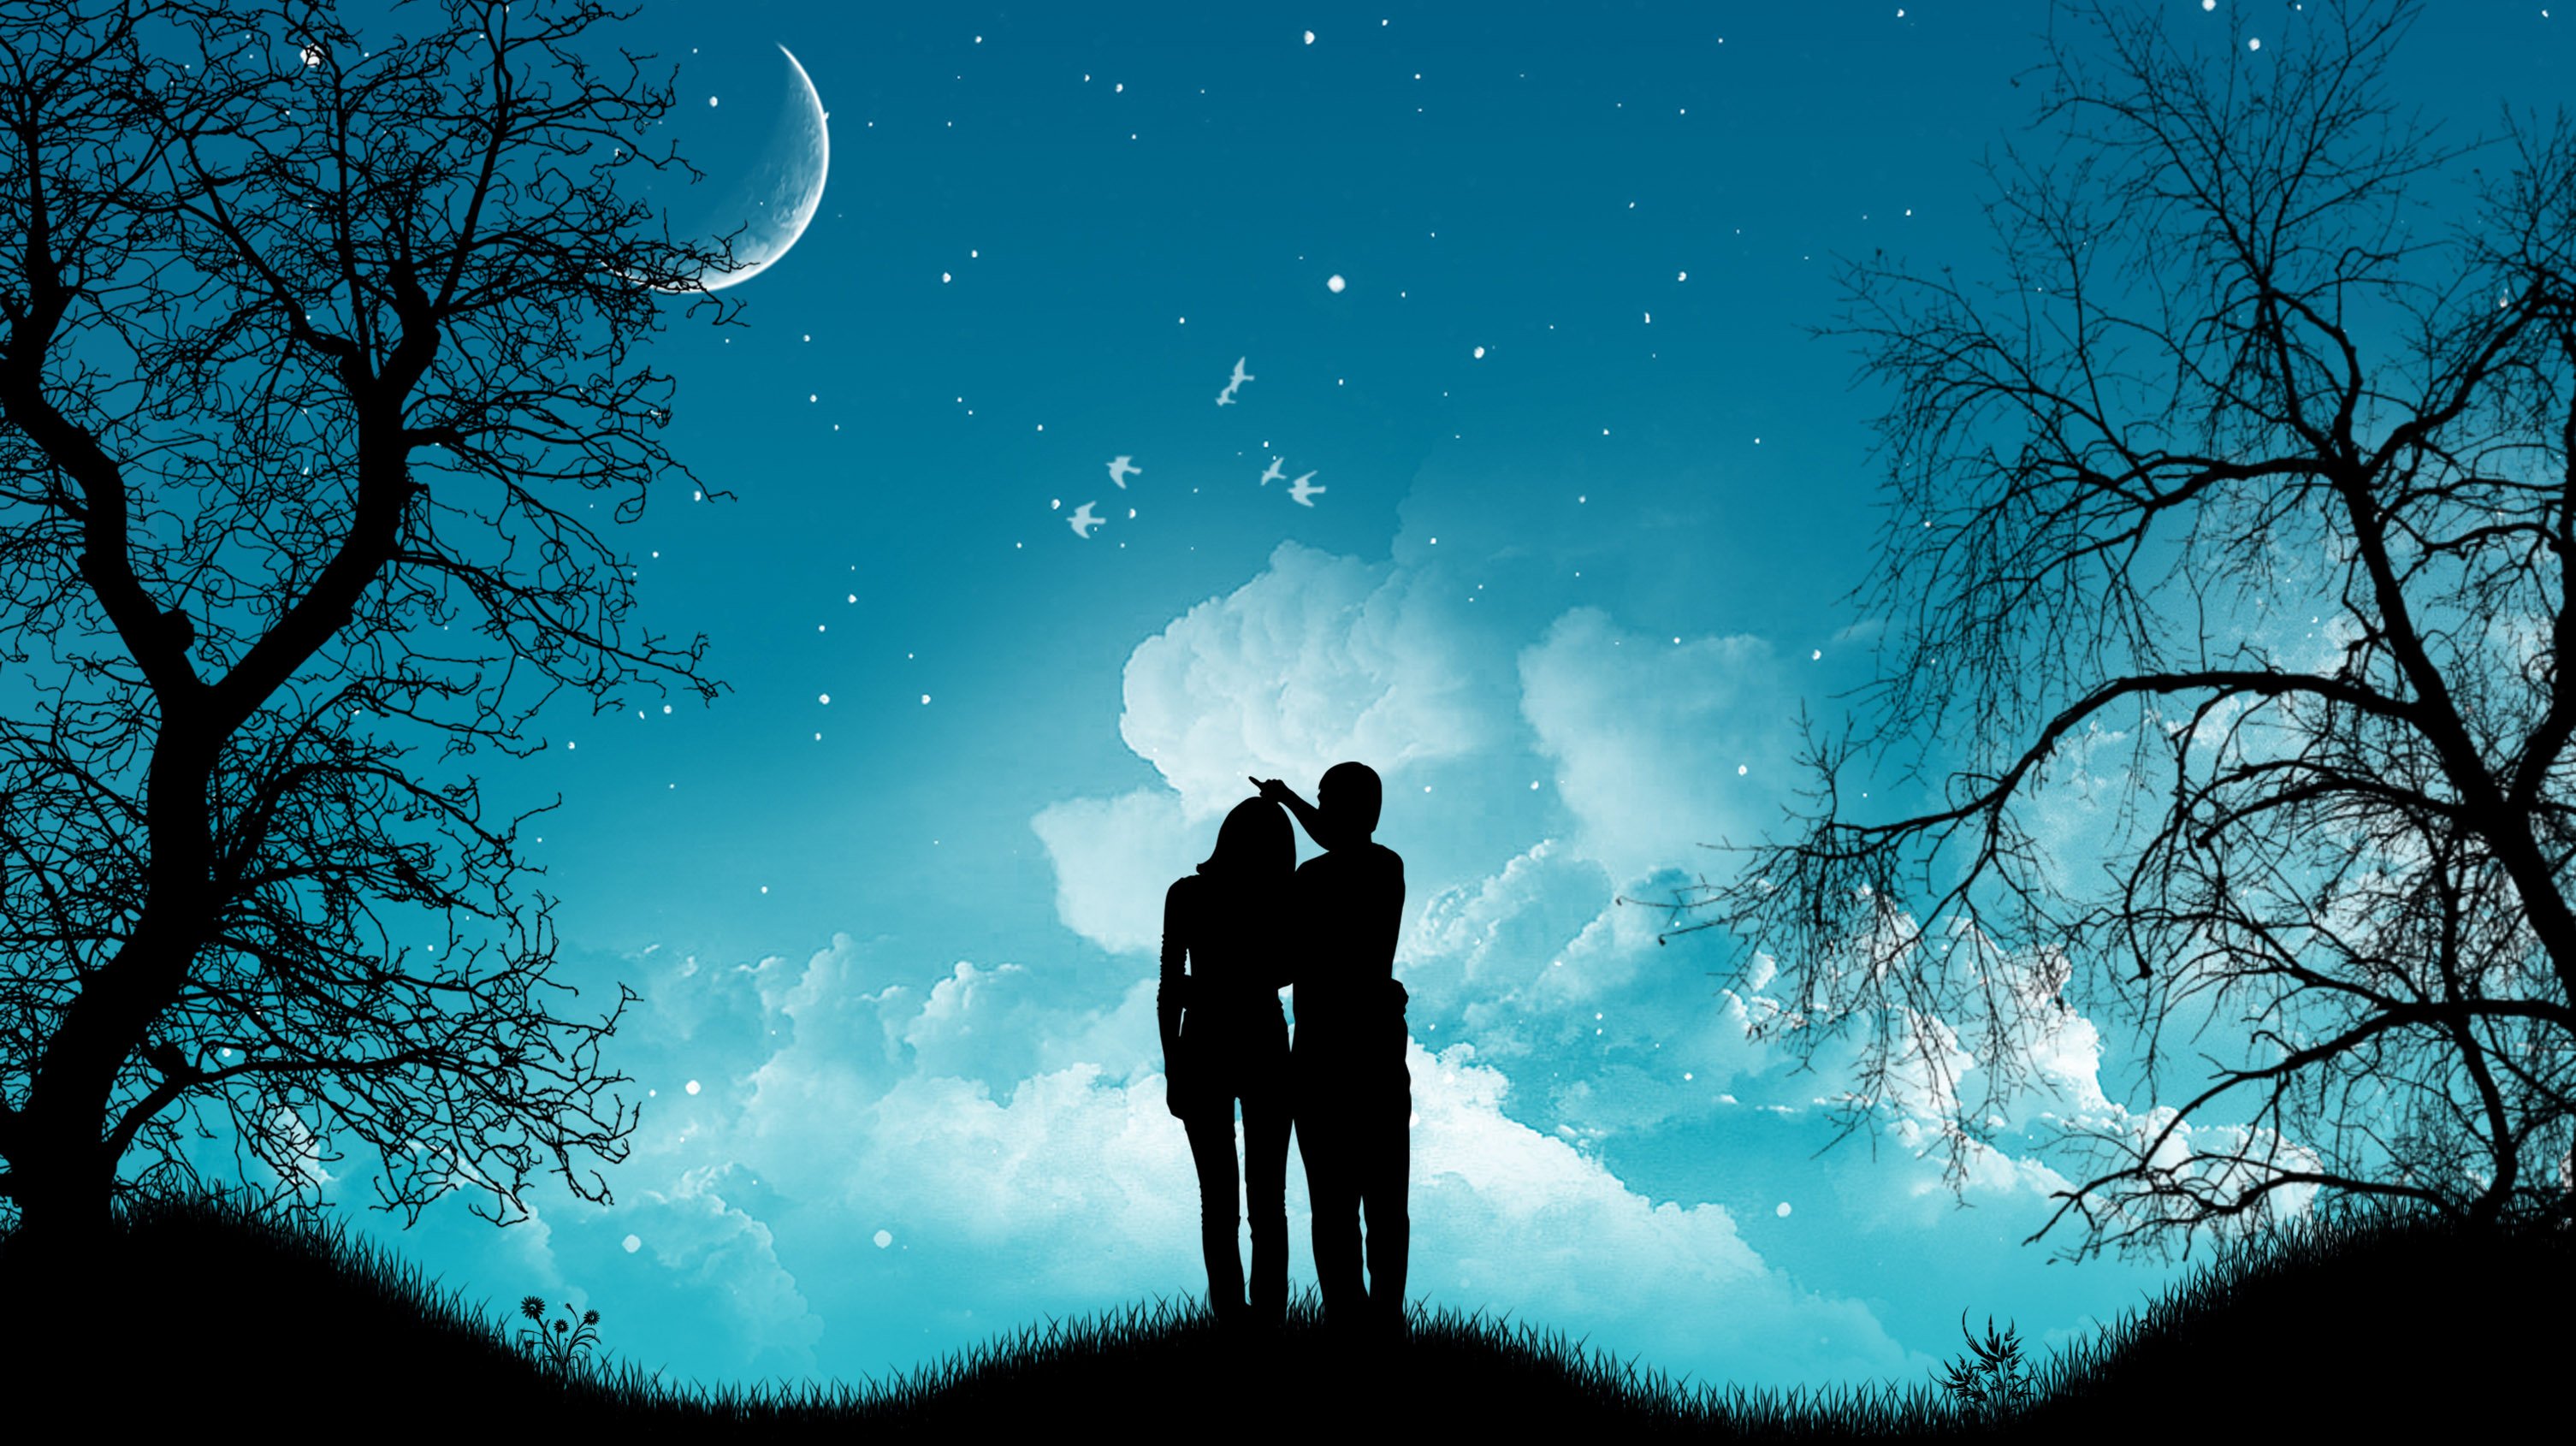 Вместе спокойный. Двое под звездным небом. Пара на фоне Луны. Влюбленные под звездами. Пара на фоне звездного неба.